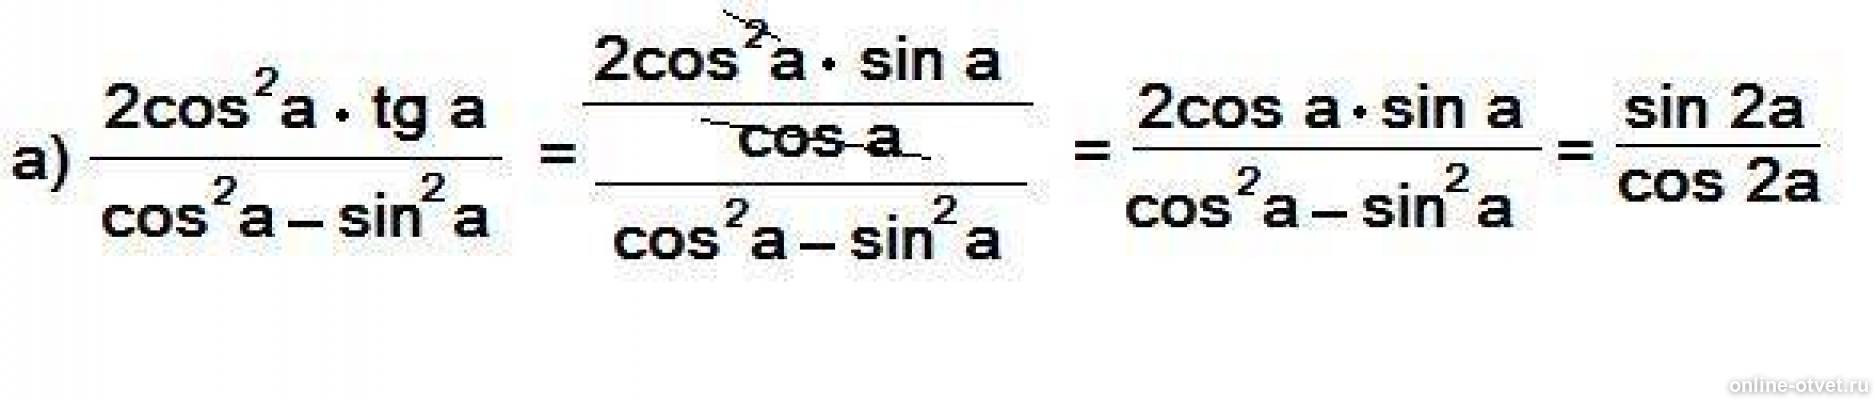 Vi cos. Cos a b cos a b упростить выражение. Упростить выражение sin b/cos b - sin b. Cos2a. 1-Cos2a формула.